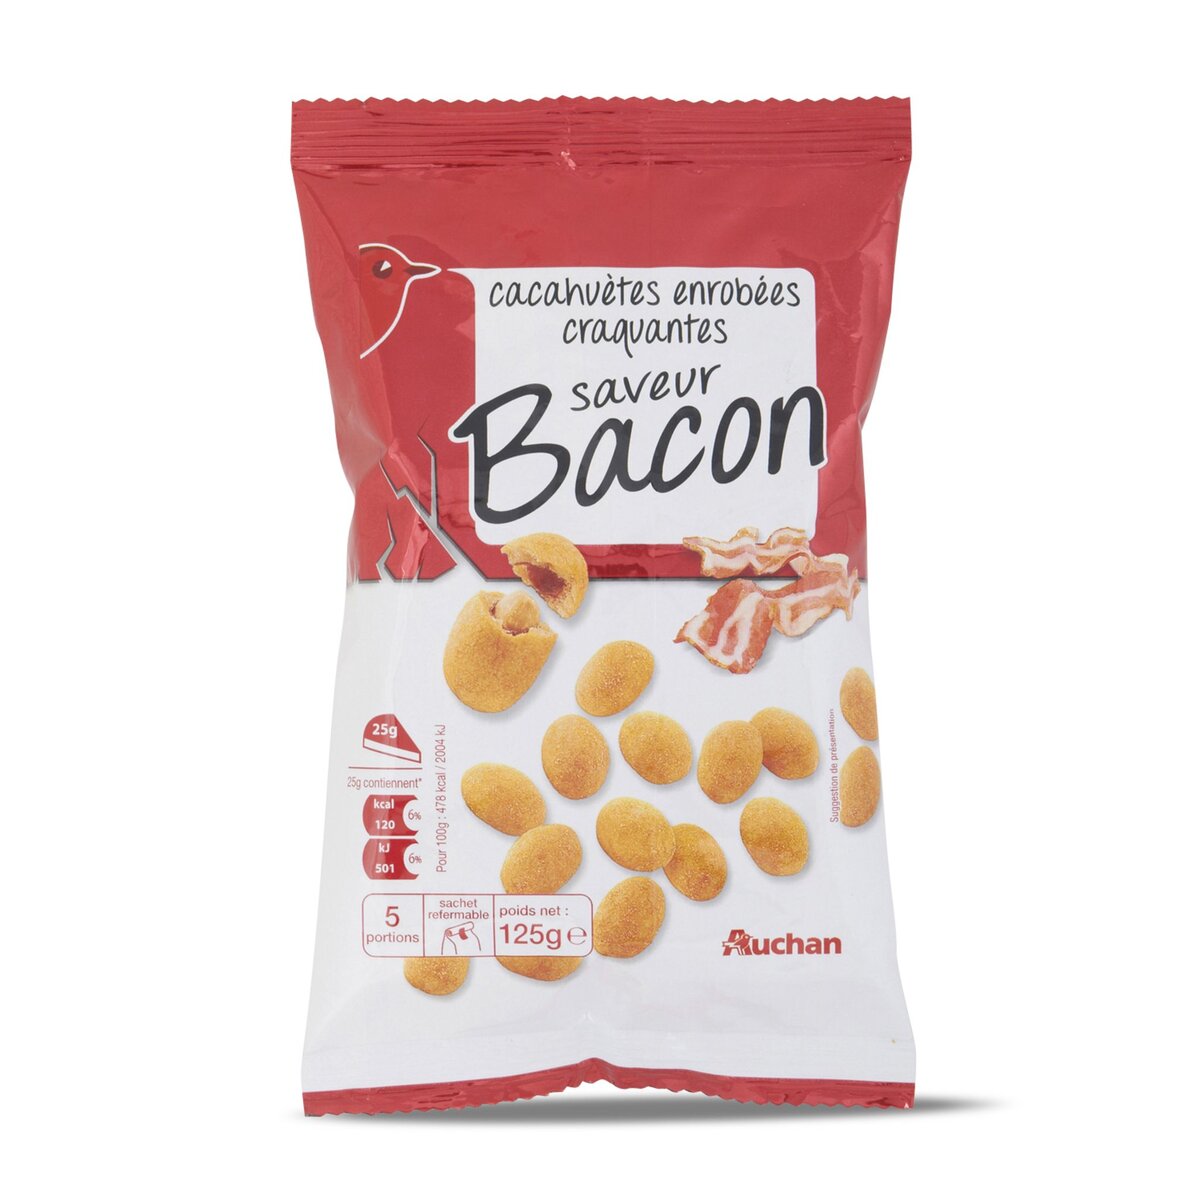 AUCHAN Auchan cacahuète enrobée saveur bacon 125g